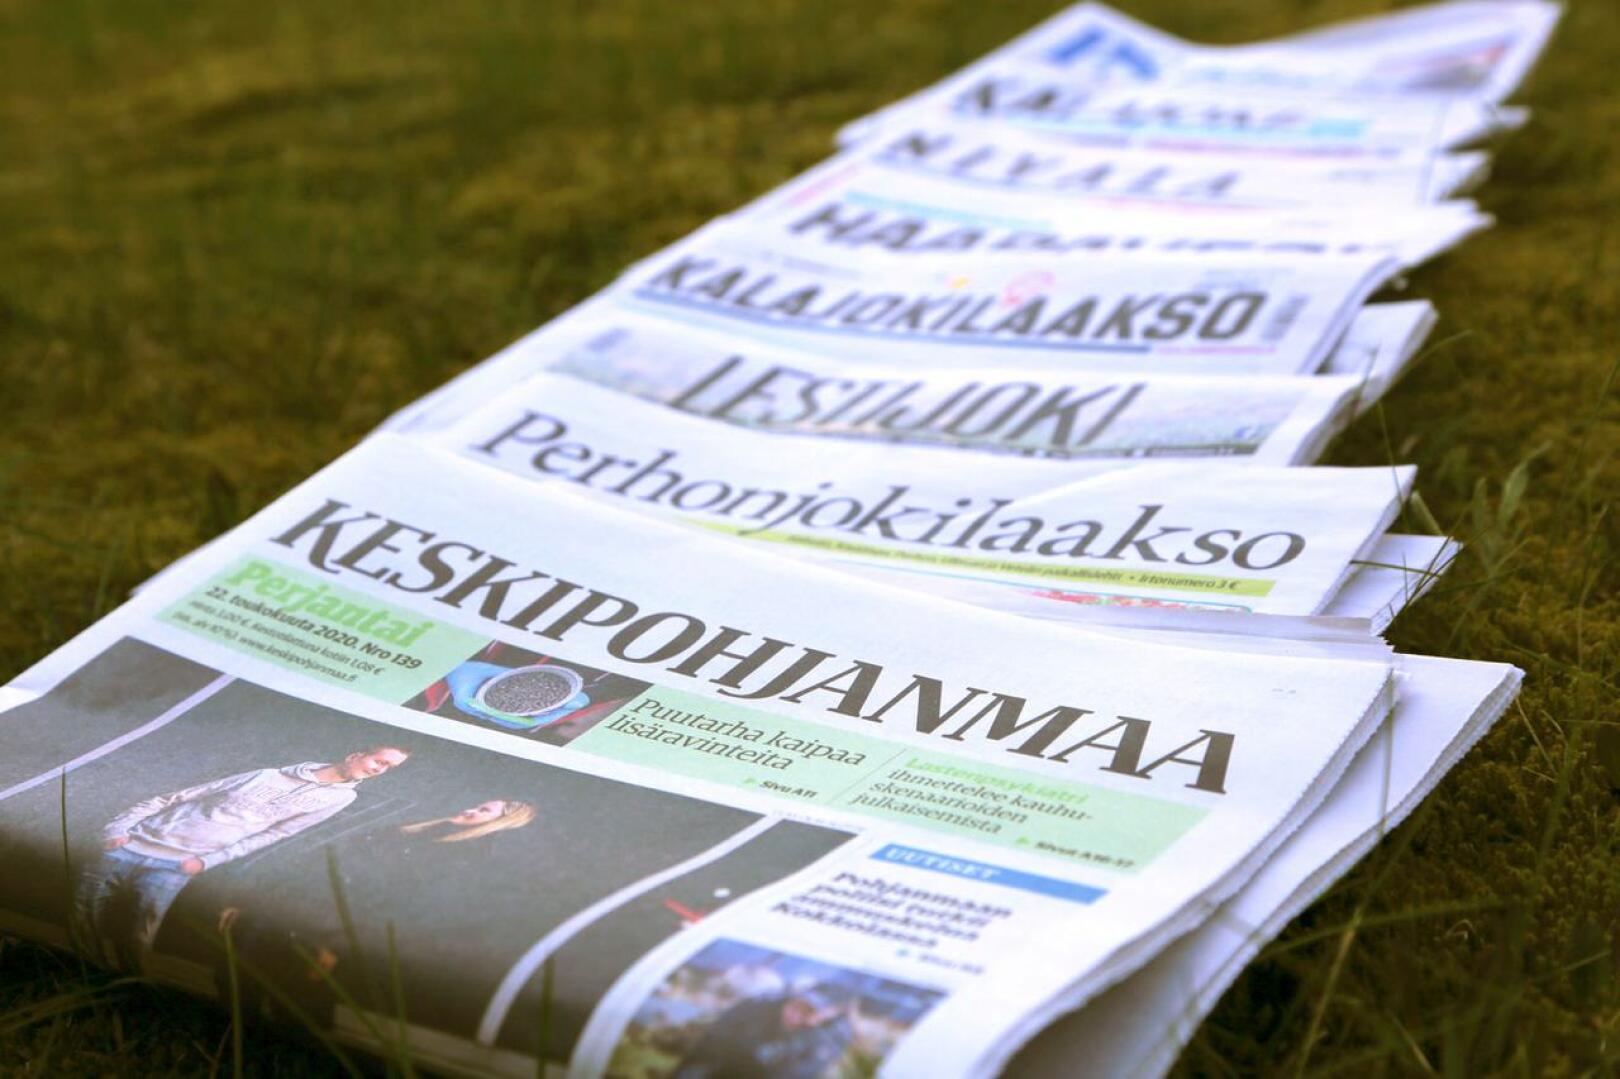 KPK Yhtiöihin kuuluvat tilattavat paikallislehdet saivat koronakriisitukea Google News Initiavelta. 